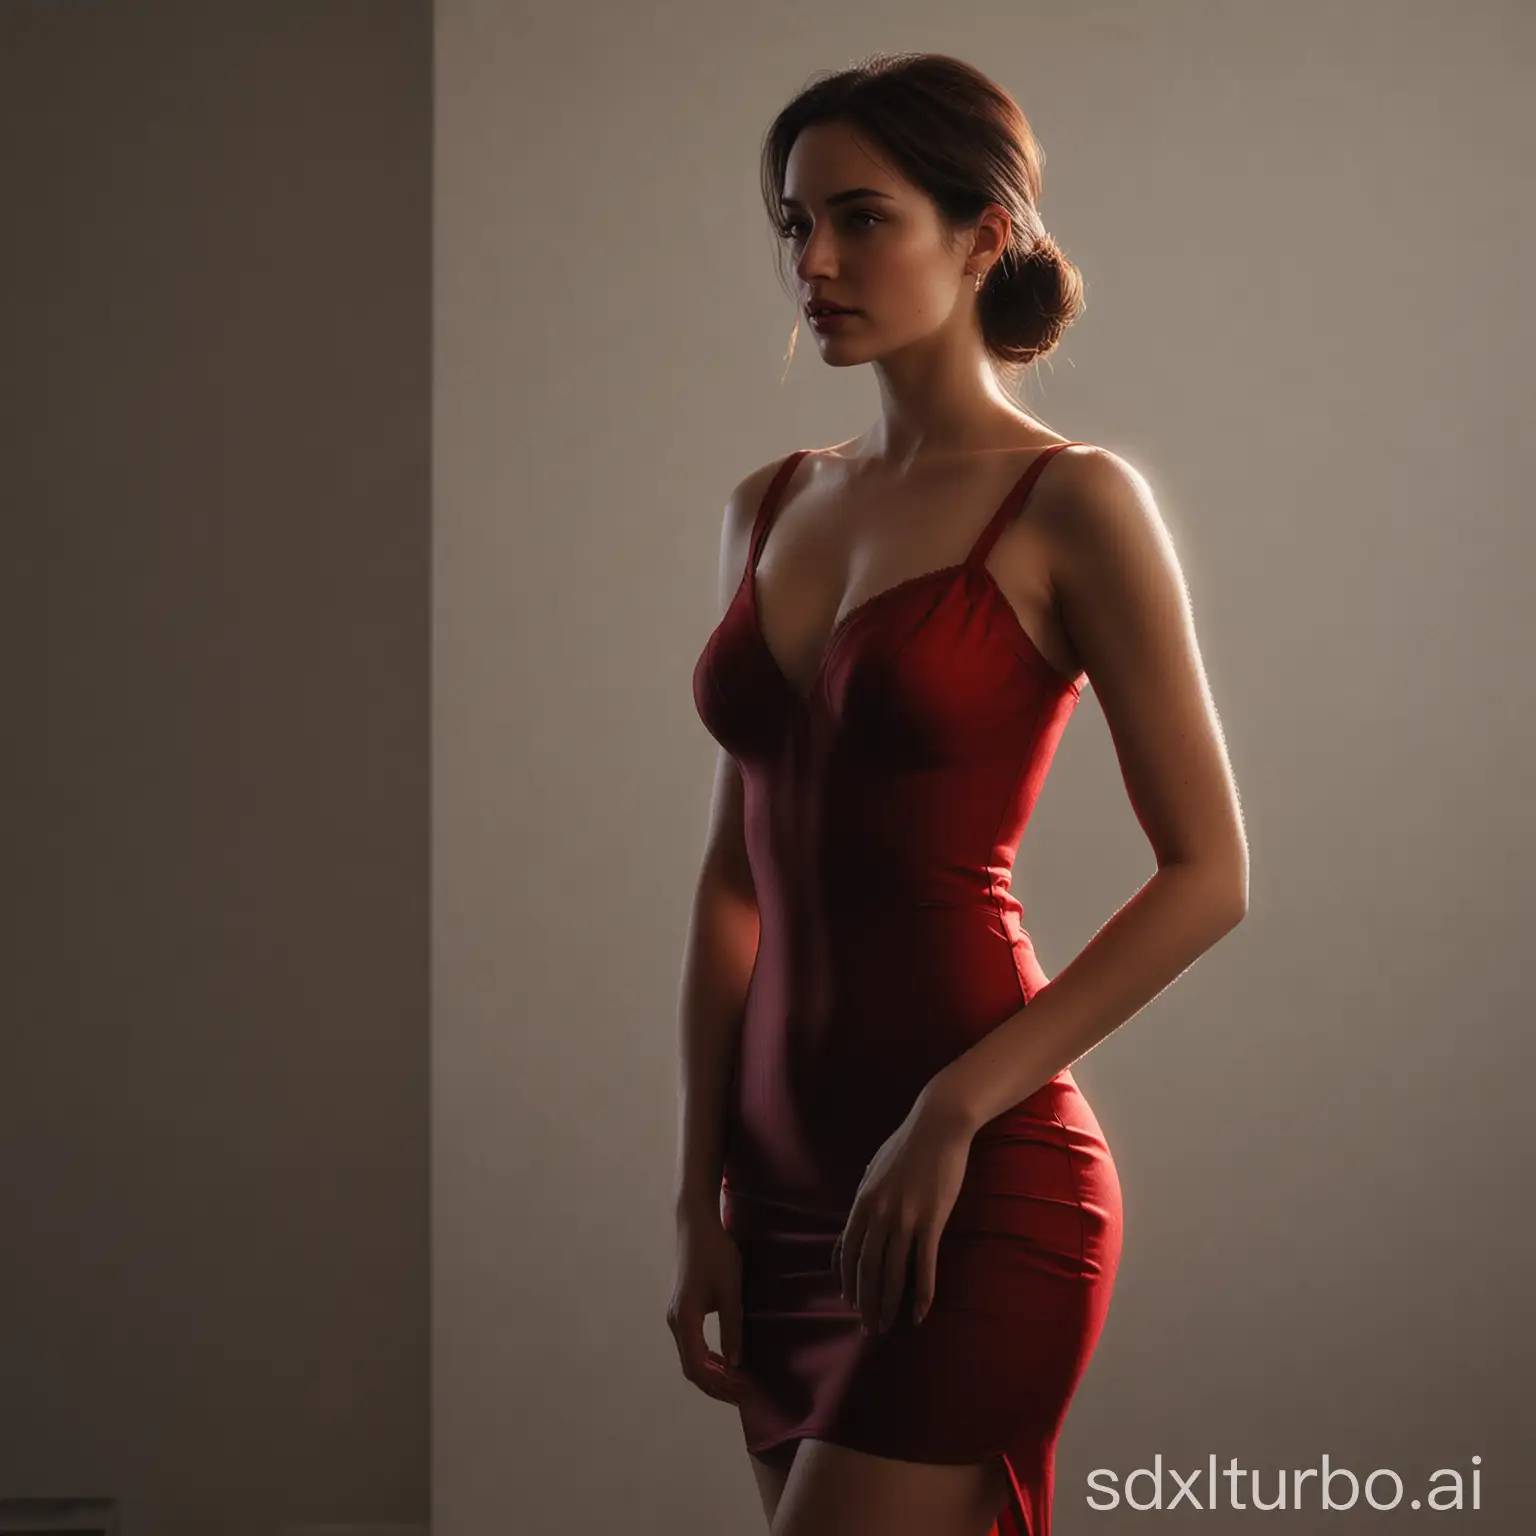 Elegant-Woman-in-Silhouette-Red-Backlit-Beauty-in-Sleek-Dress